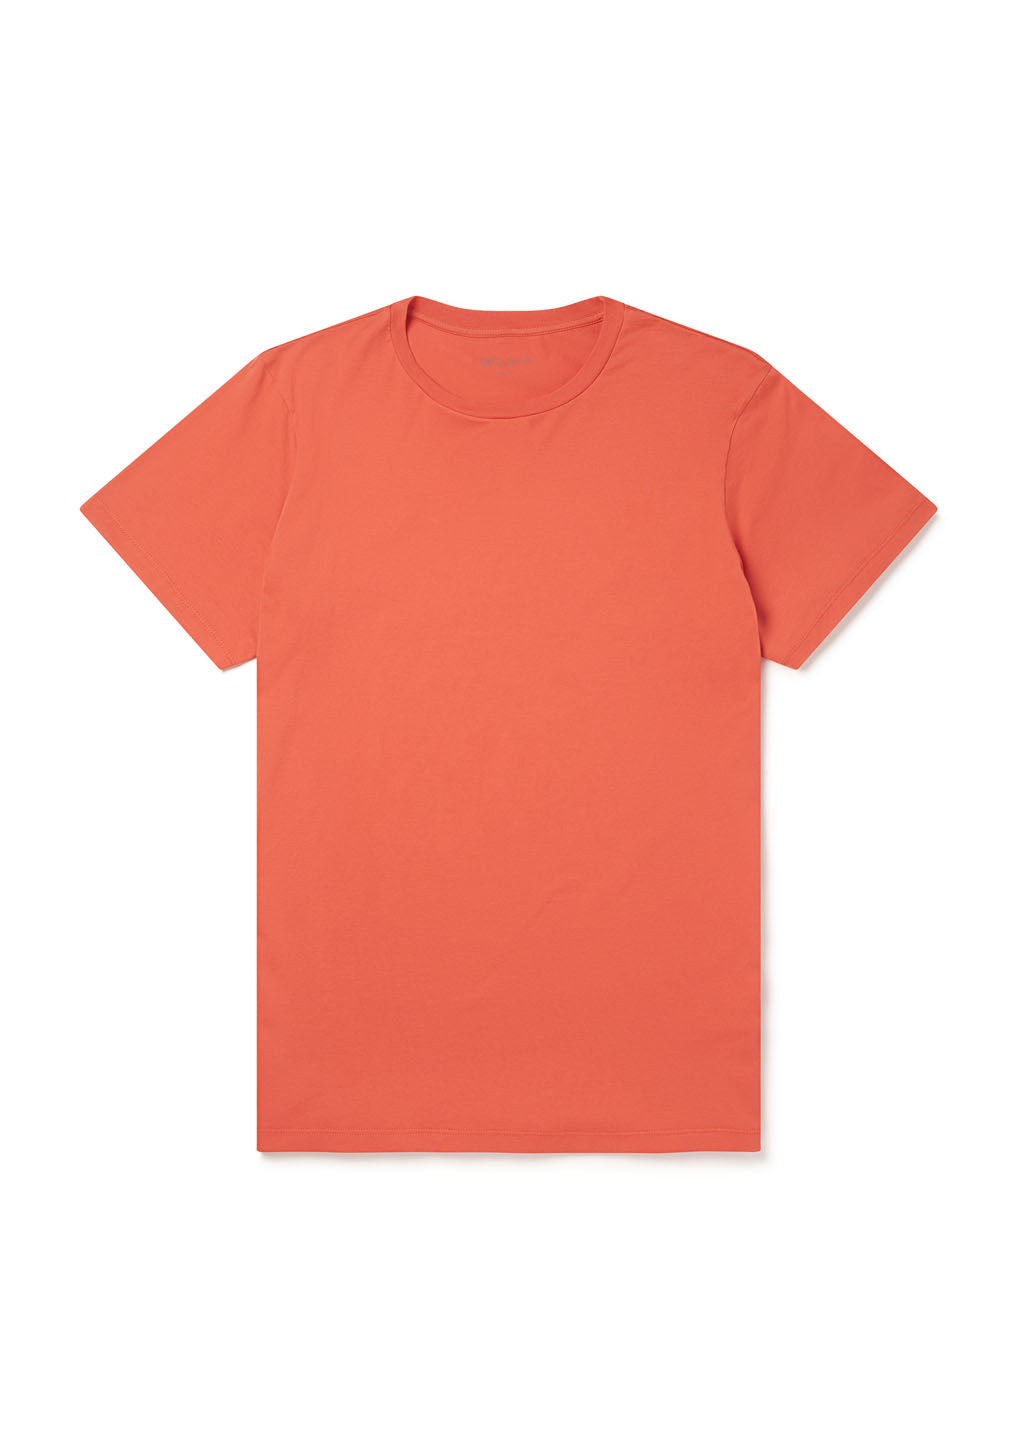 Classic T-Shirt in Burnt Orange